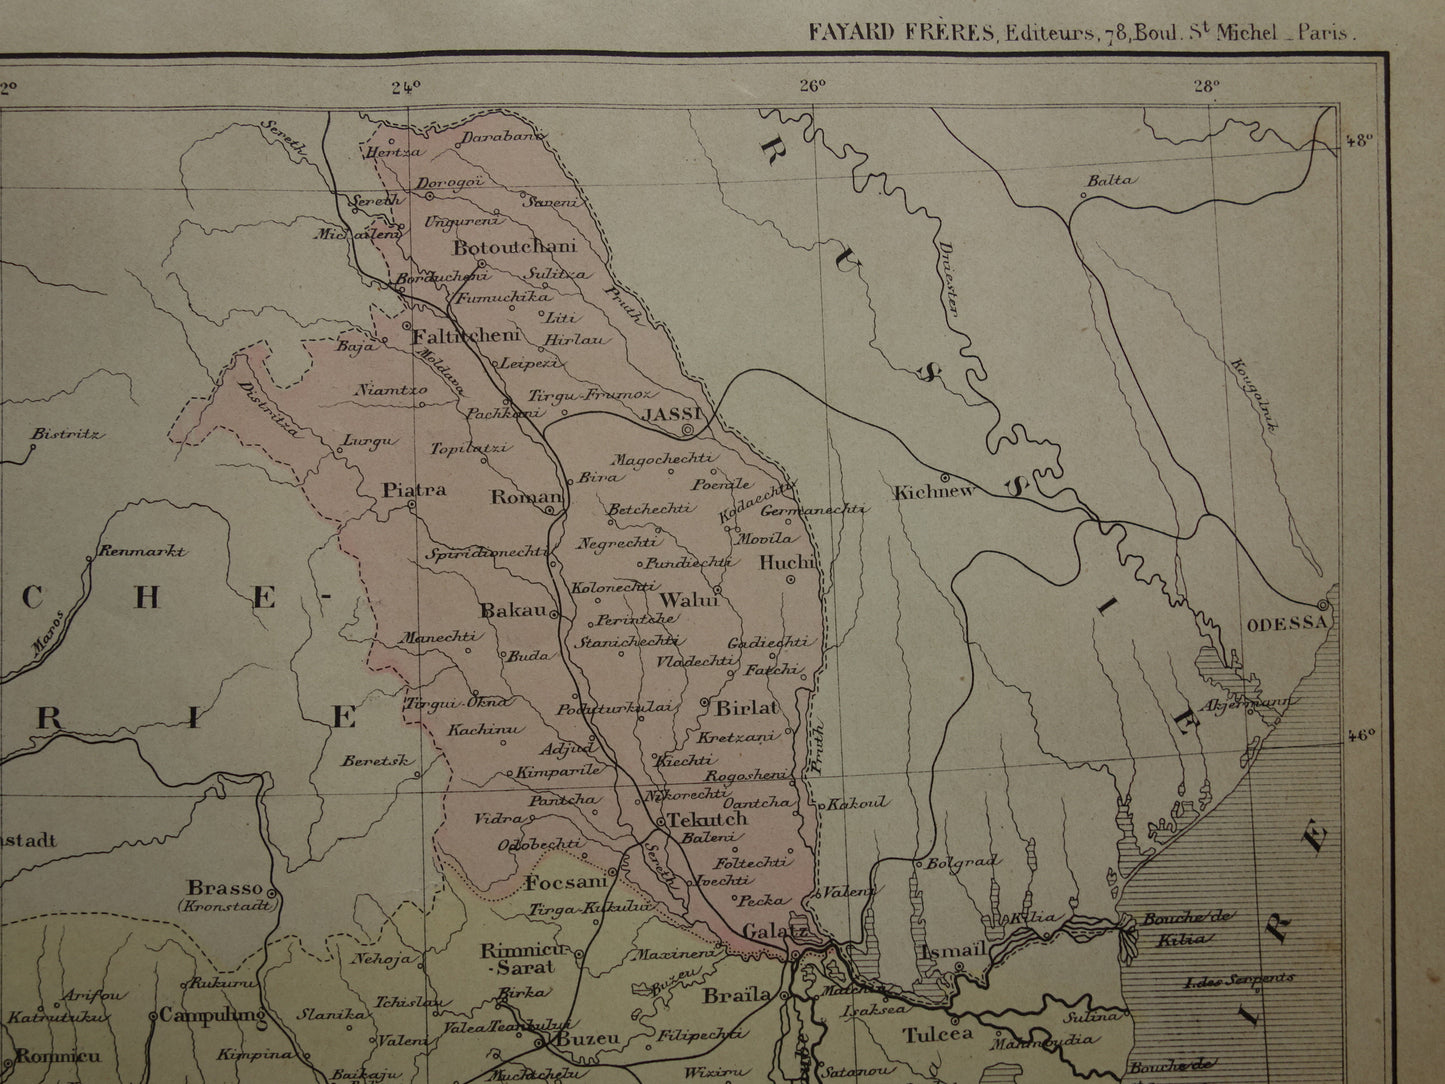 ROEMENIË oude landkaart van Roemenië uit het jaar 1896 origineel handgekleurde antieke kaart historische print Boekarest